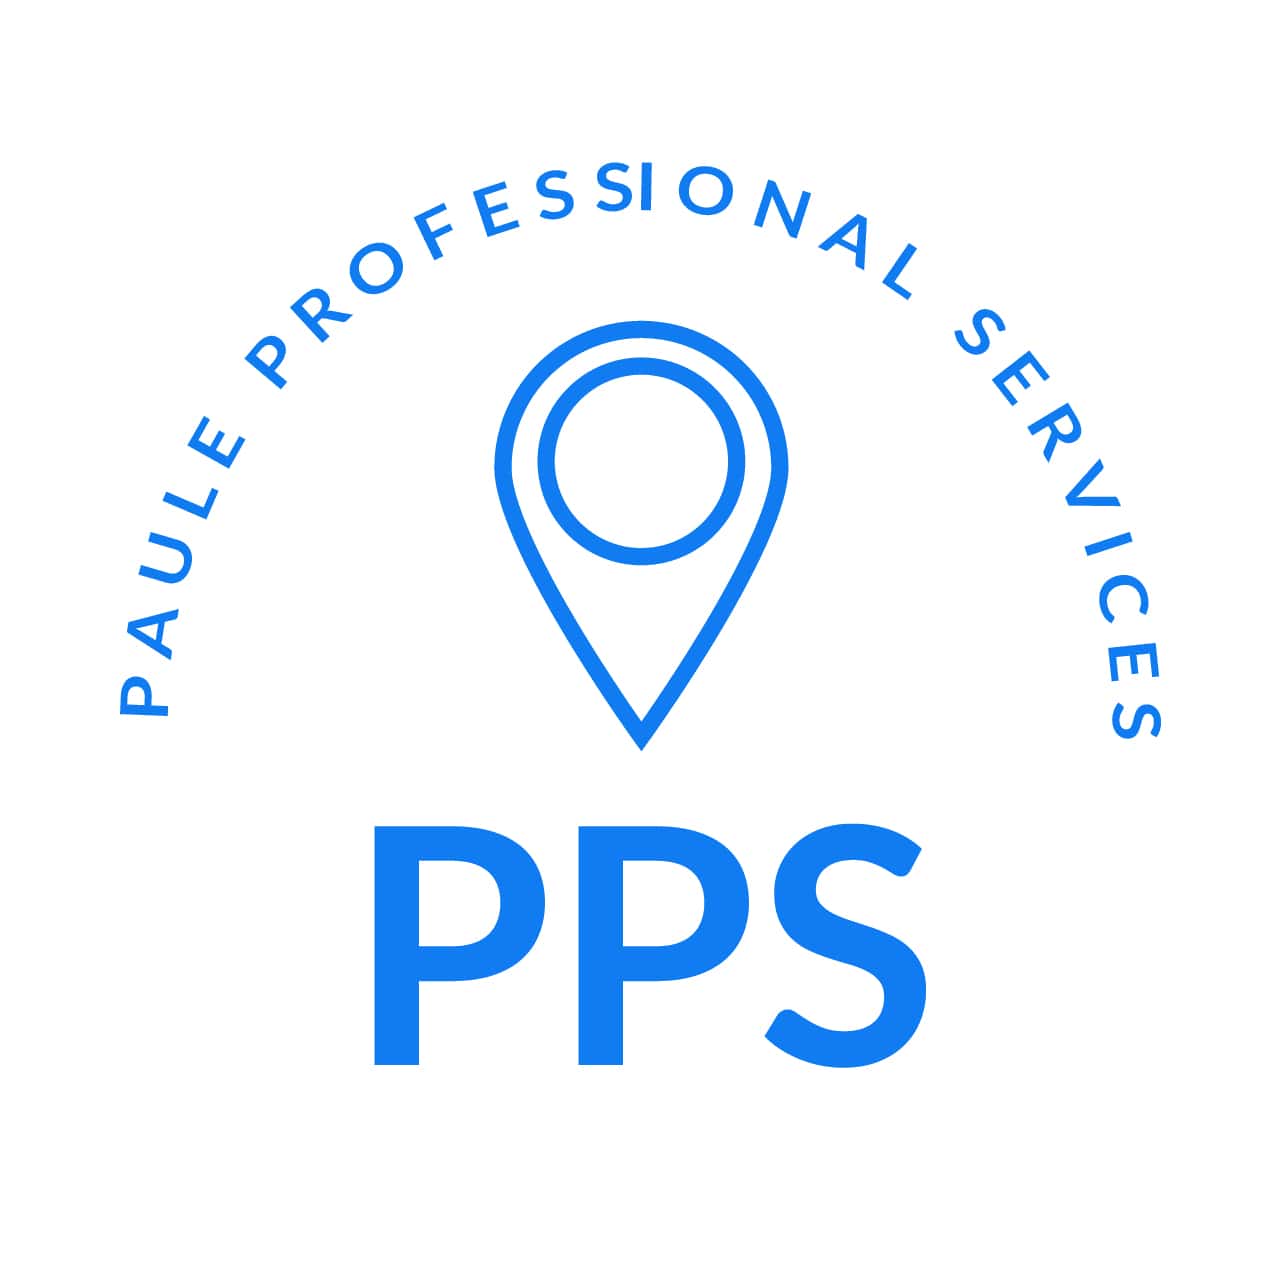 Paule Professional Services